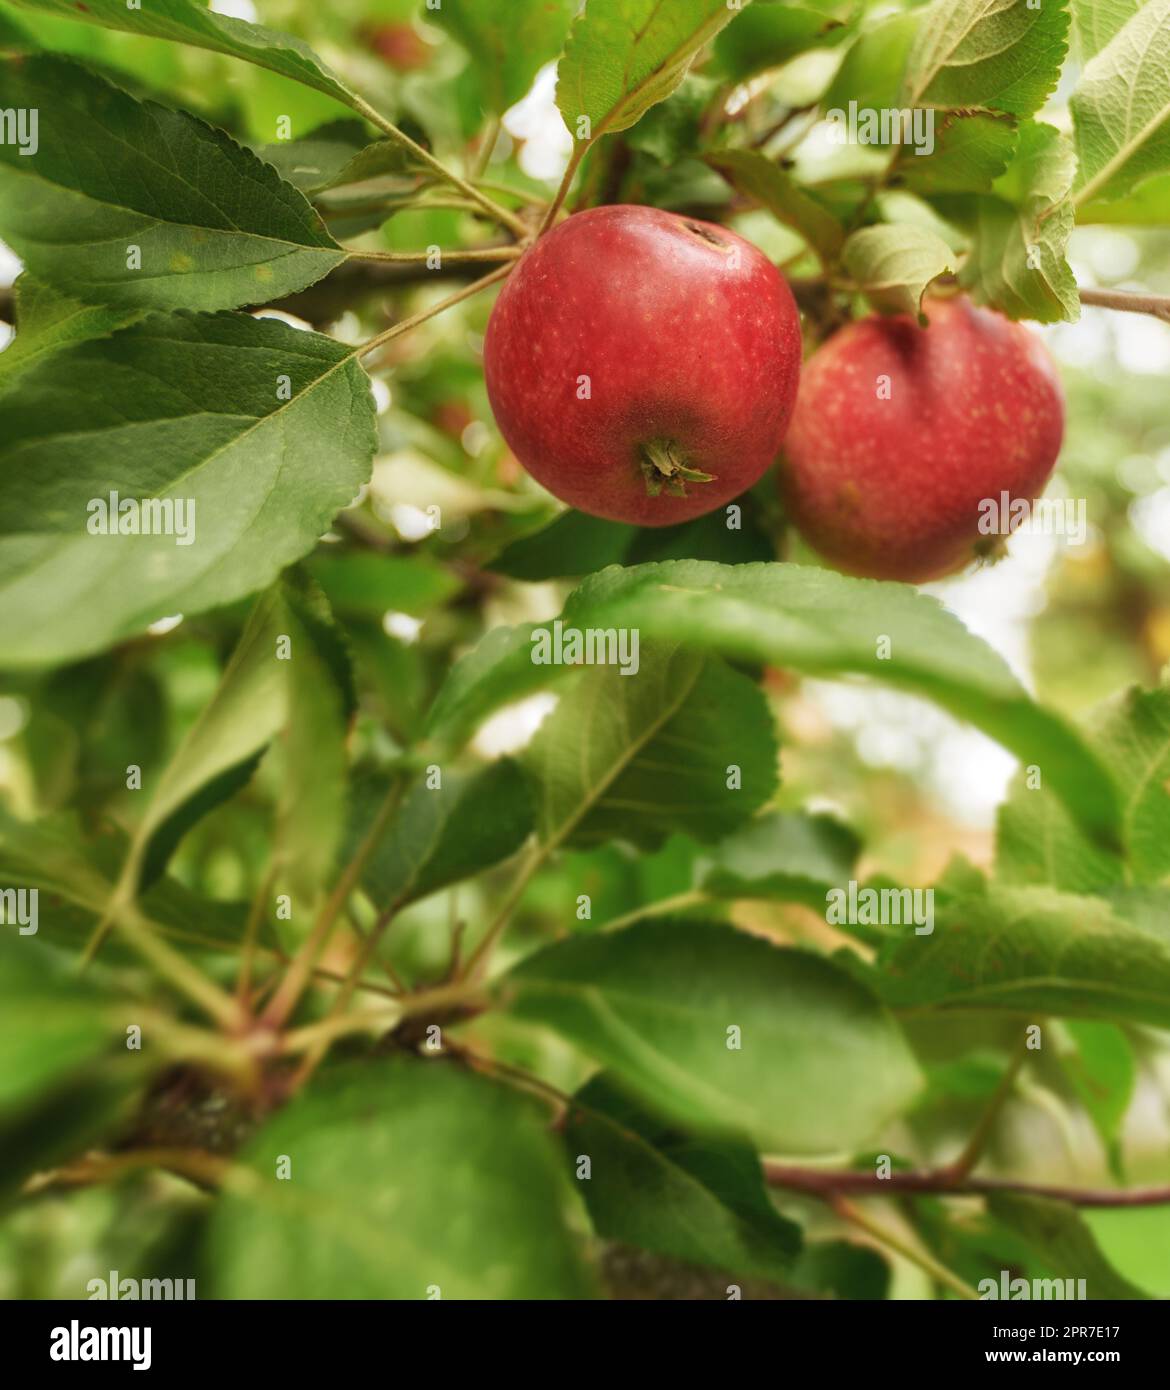 Nahaufnahme frischer roter Äpfel, gesunde und köstliche Imbissfrüchte, die für Ernährung, Ernährung oder Vitamine angebaut werden. Apfelbaum auf nachhaltiger Obstplantage in abgelegener Landschaft mit üppig grünen Stämmen und Zweigen Stockfoto